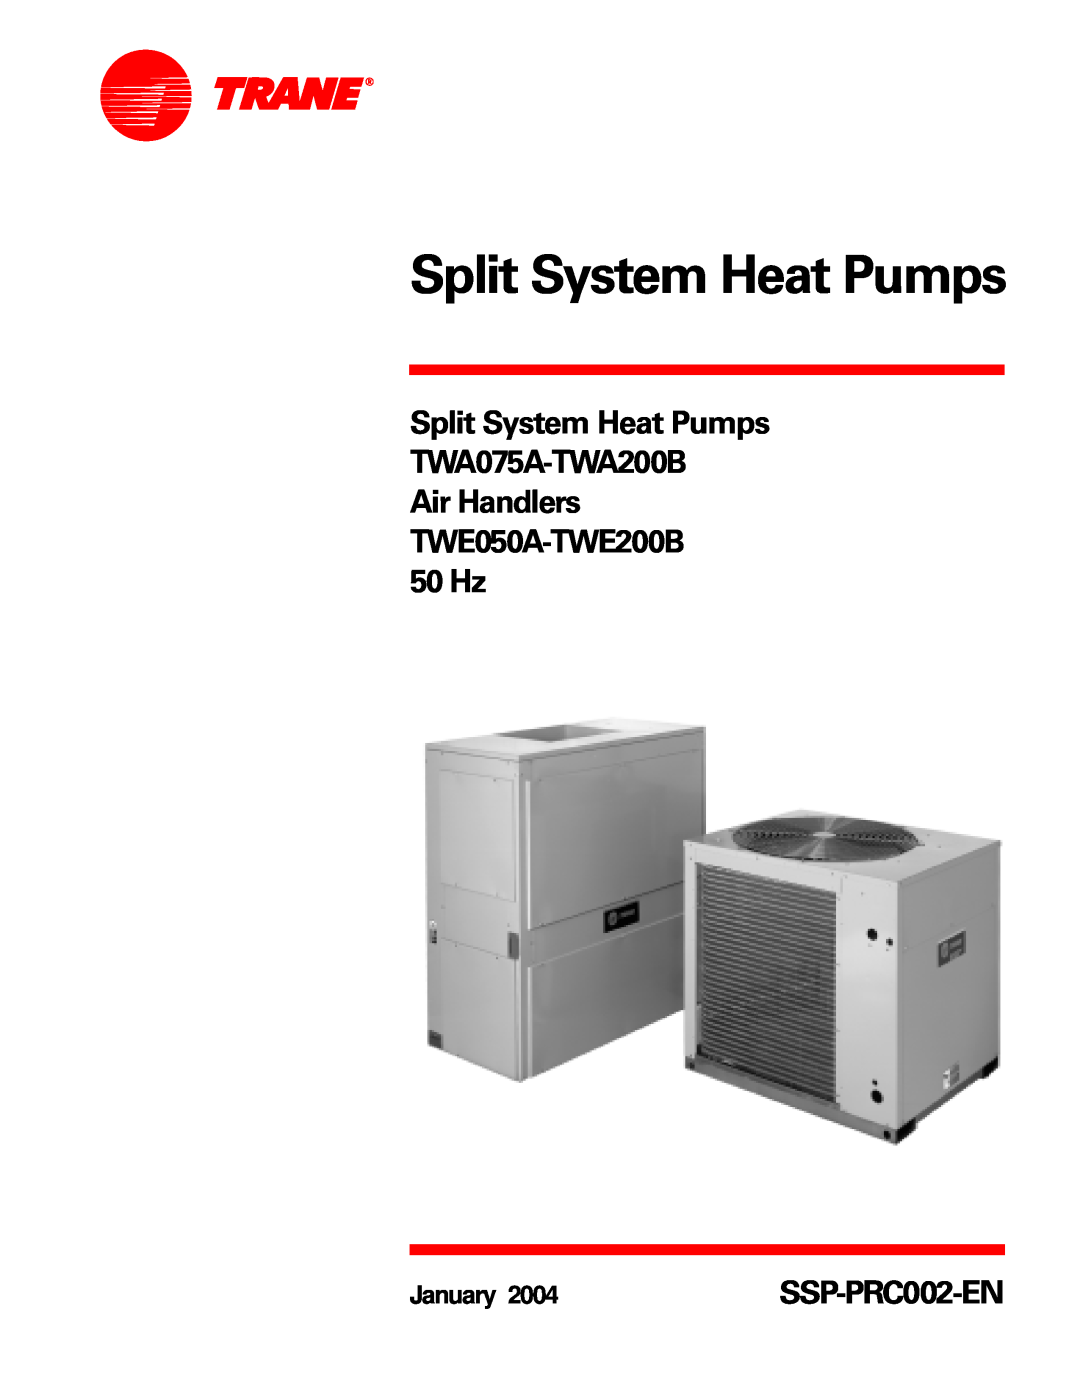 Trane manual Split System Heat Pumps TWA075A-TWA200B, Air Handlers TWE050A-TWE200B 50 Hz, January 